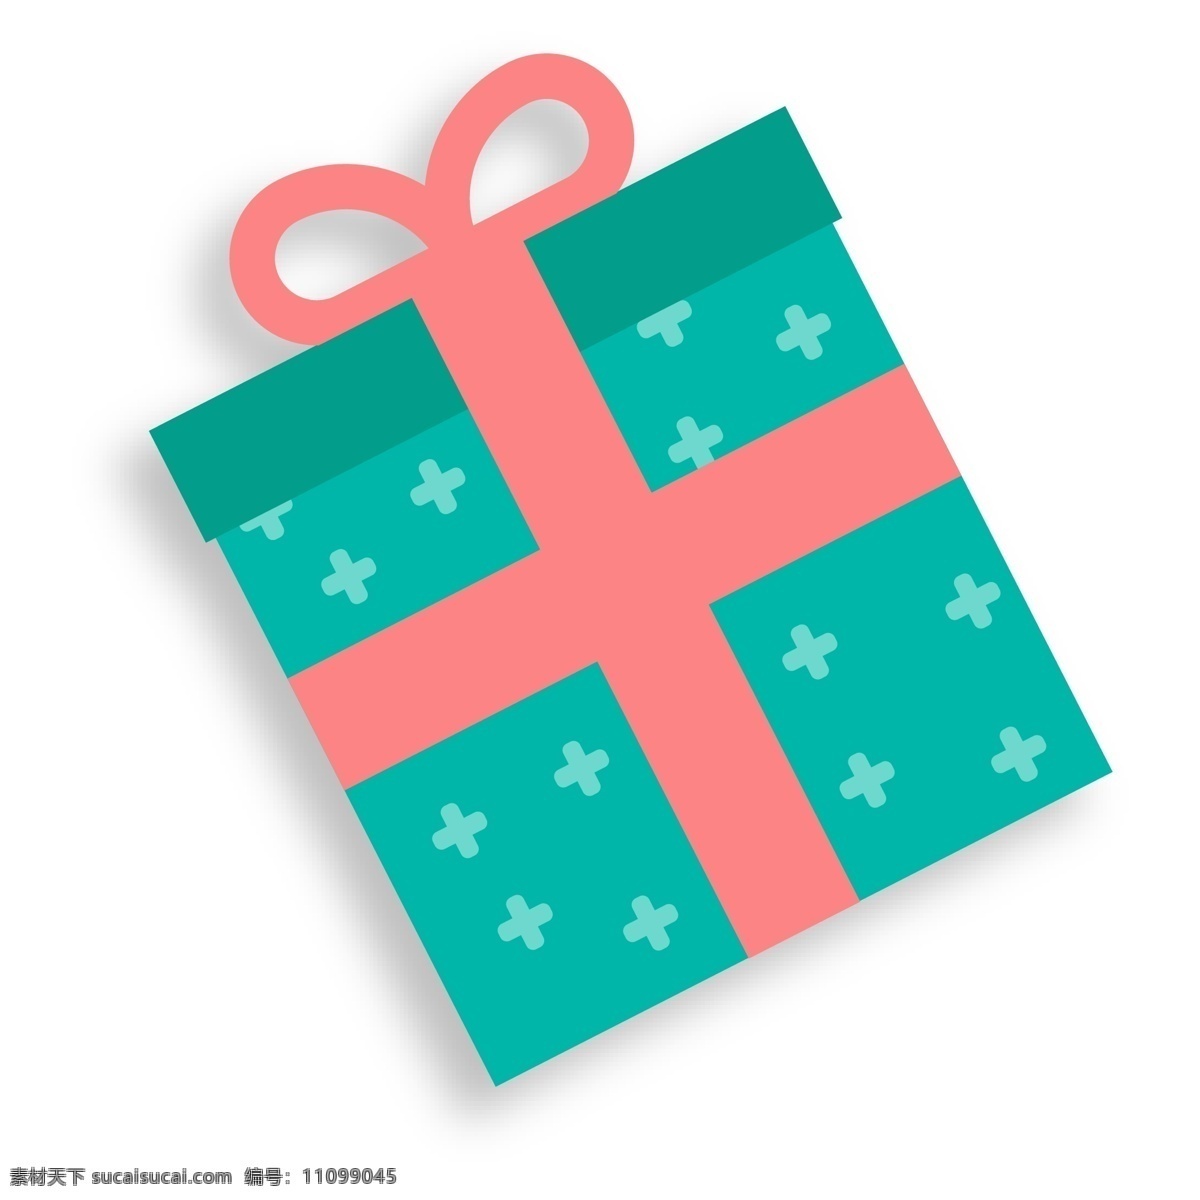 绿色 礼物 盒 装饰 卡通 扁平化 礼物盒 活动 节日 装饰素材